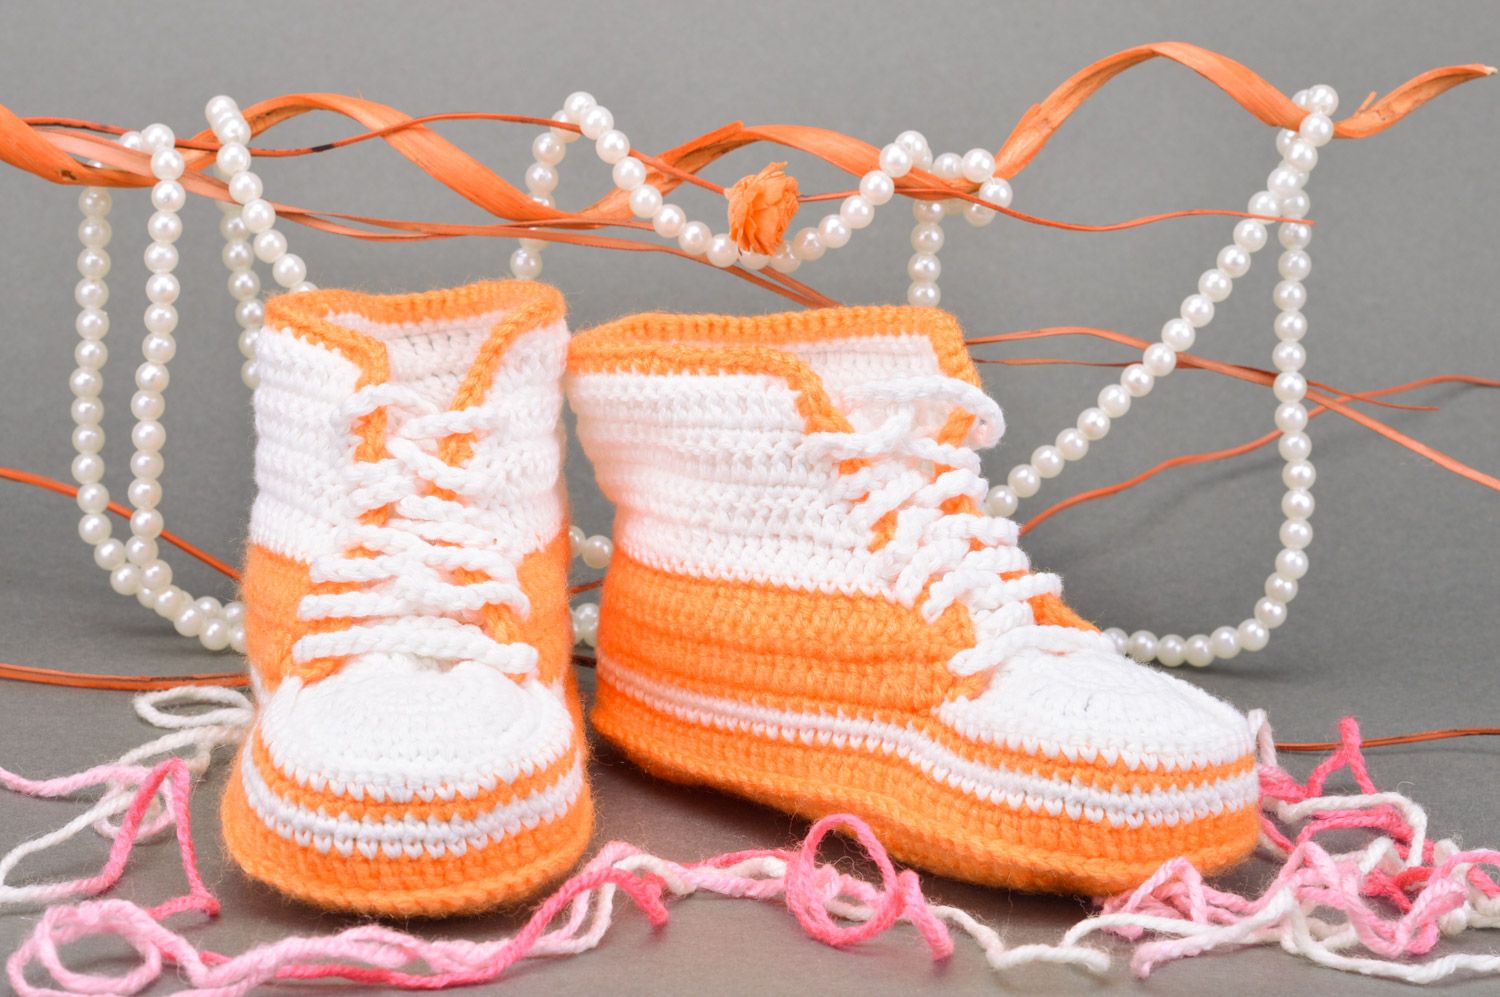 Chaussons baskets tricotés au crochet orange-blanc à lacets faits main pour bébé photo 1